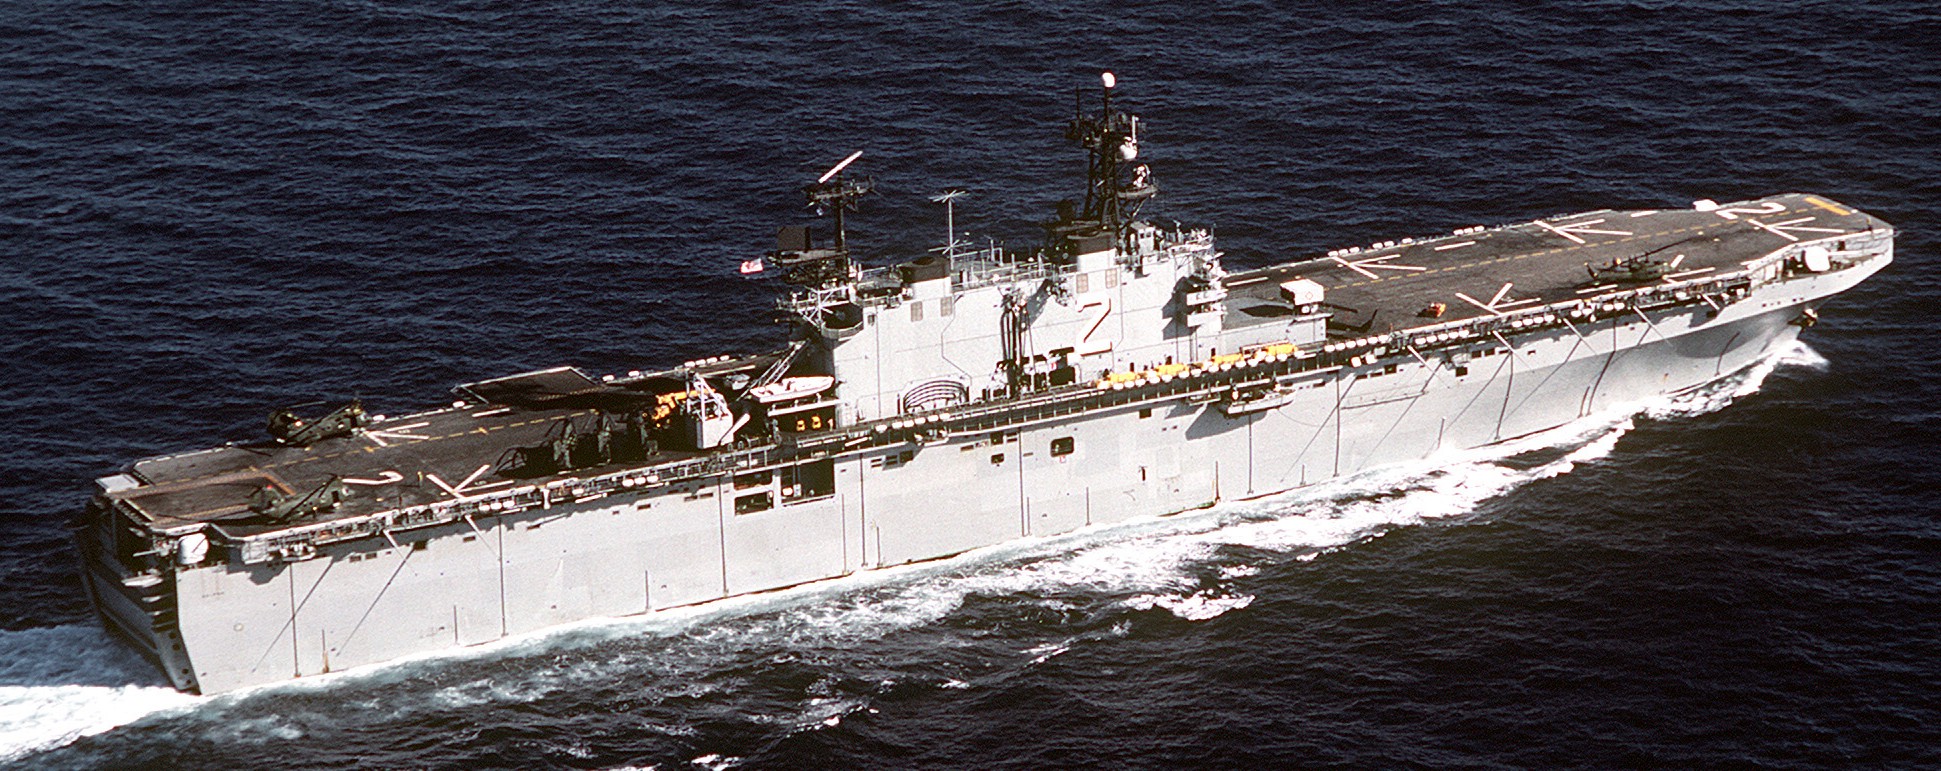 lha-2 uss saipan tarawa class amphibious assault ship us navy 32nd mau hmm-264 usmc exercise ocean venture 42